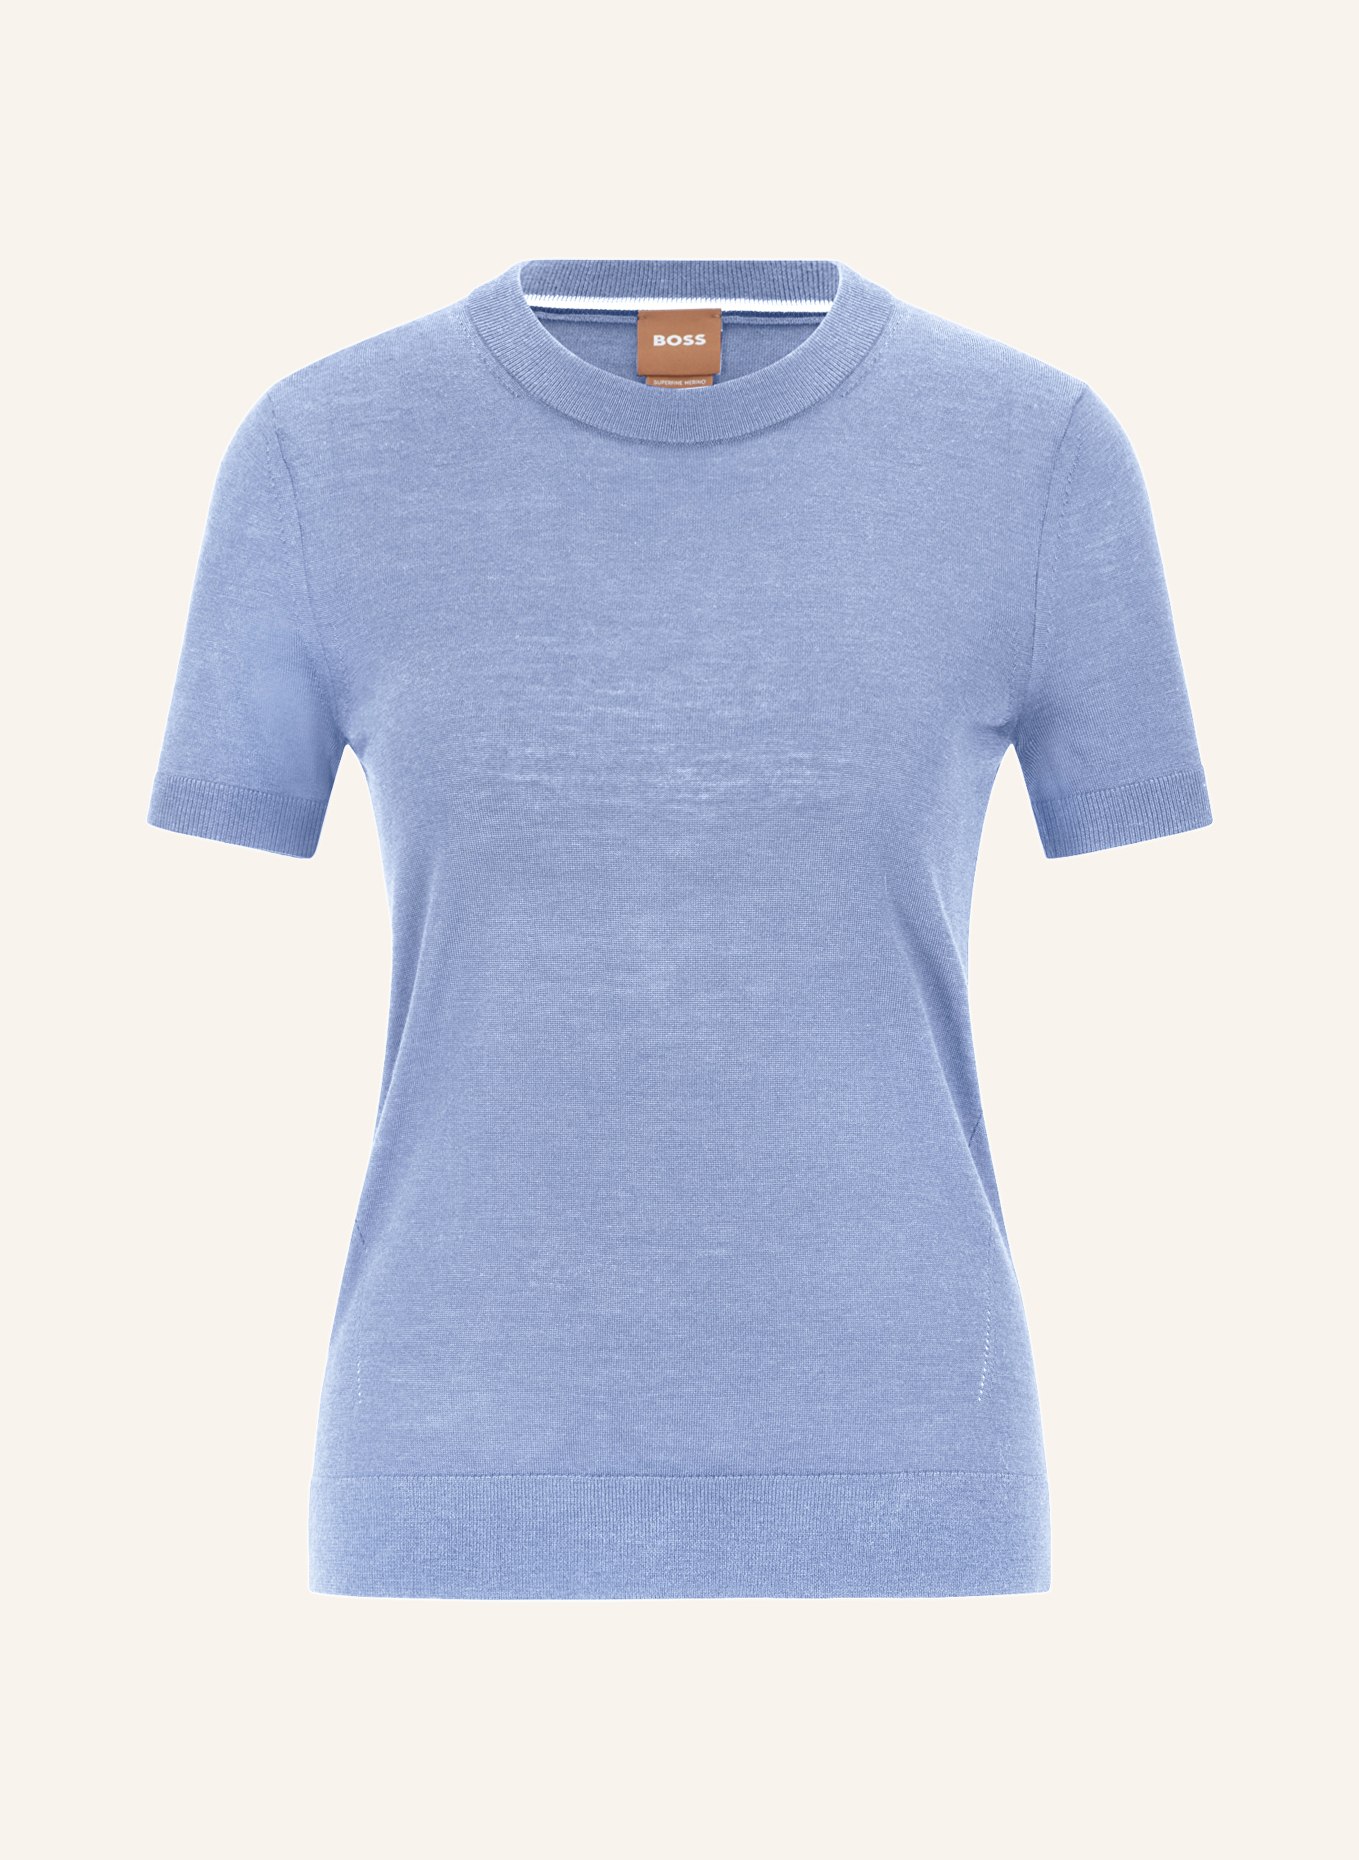 BOSS Strickshirt FALYSSIASI, Farbe: 436 BRIGHT BLUE (Bild 1)